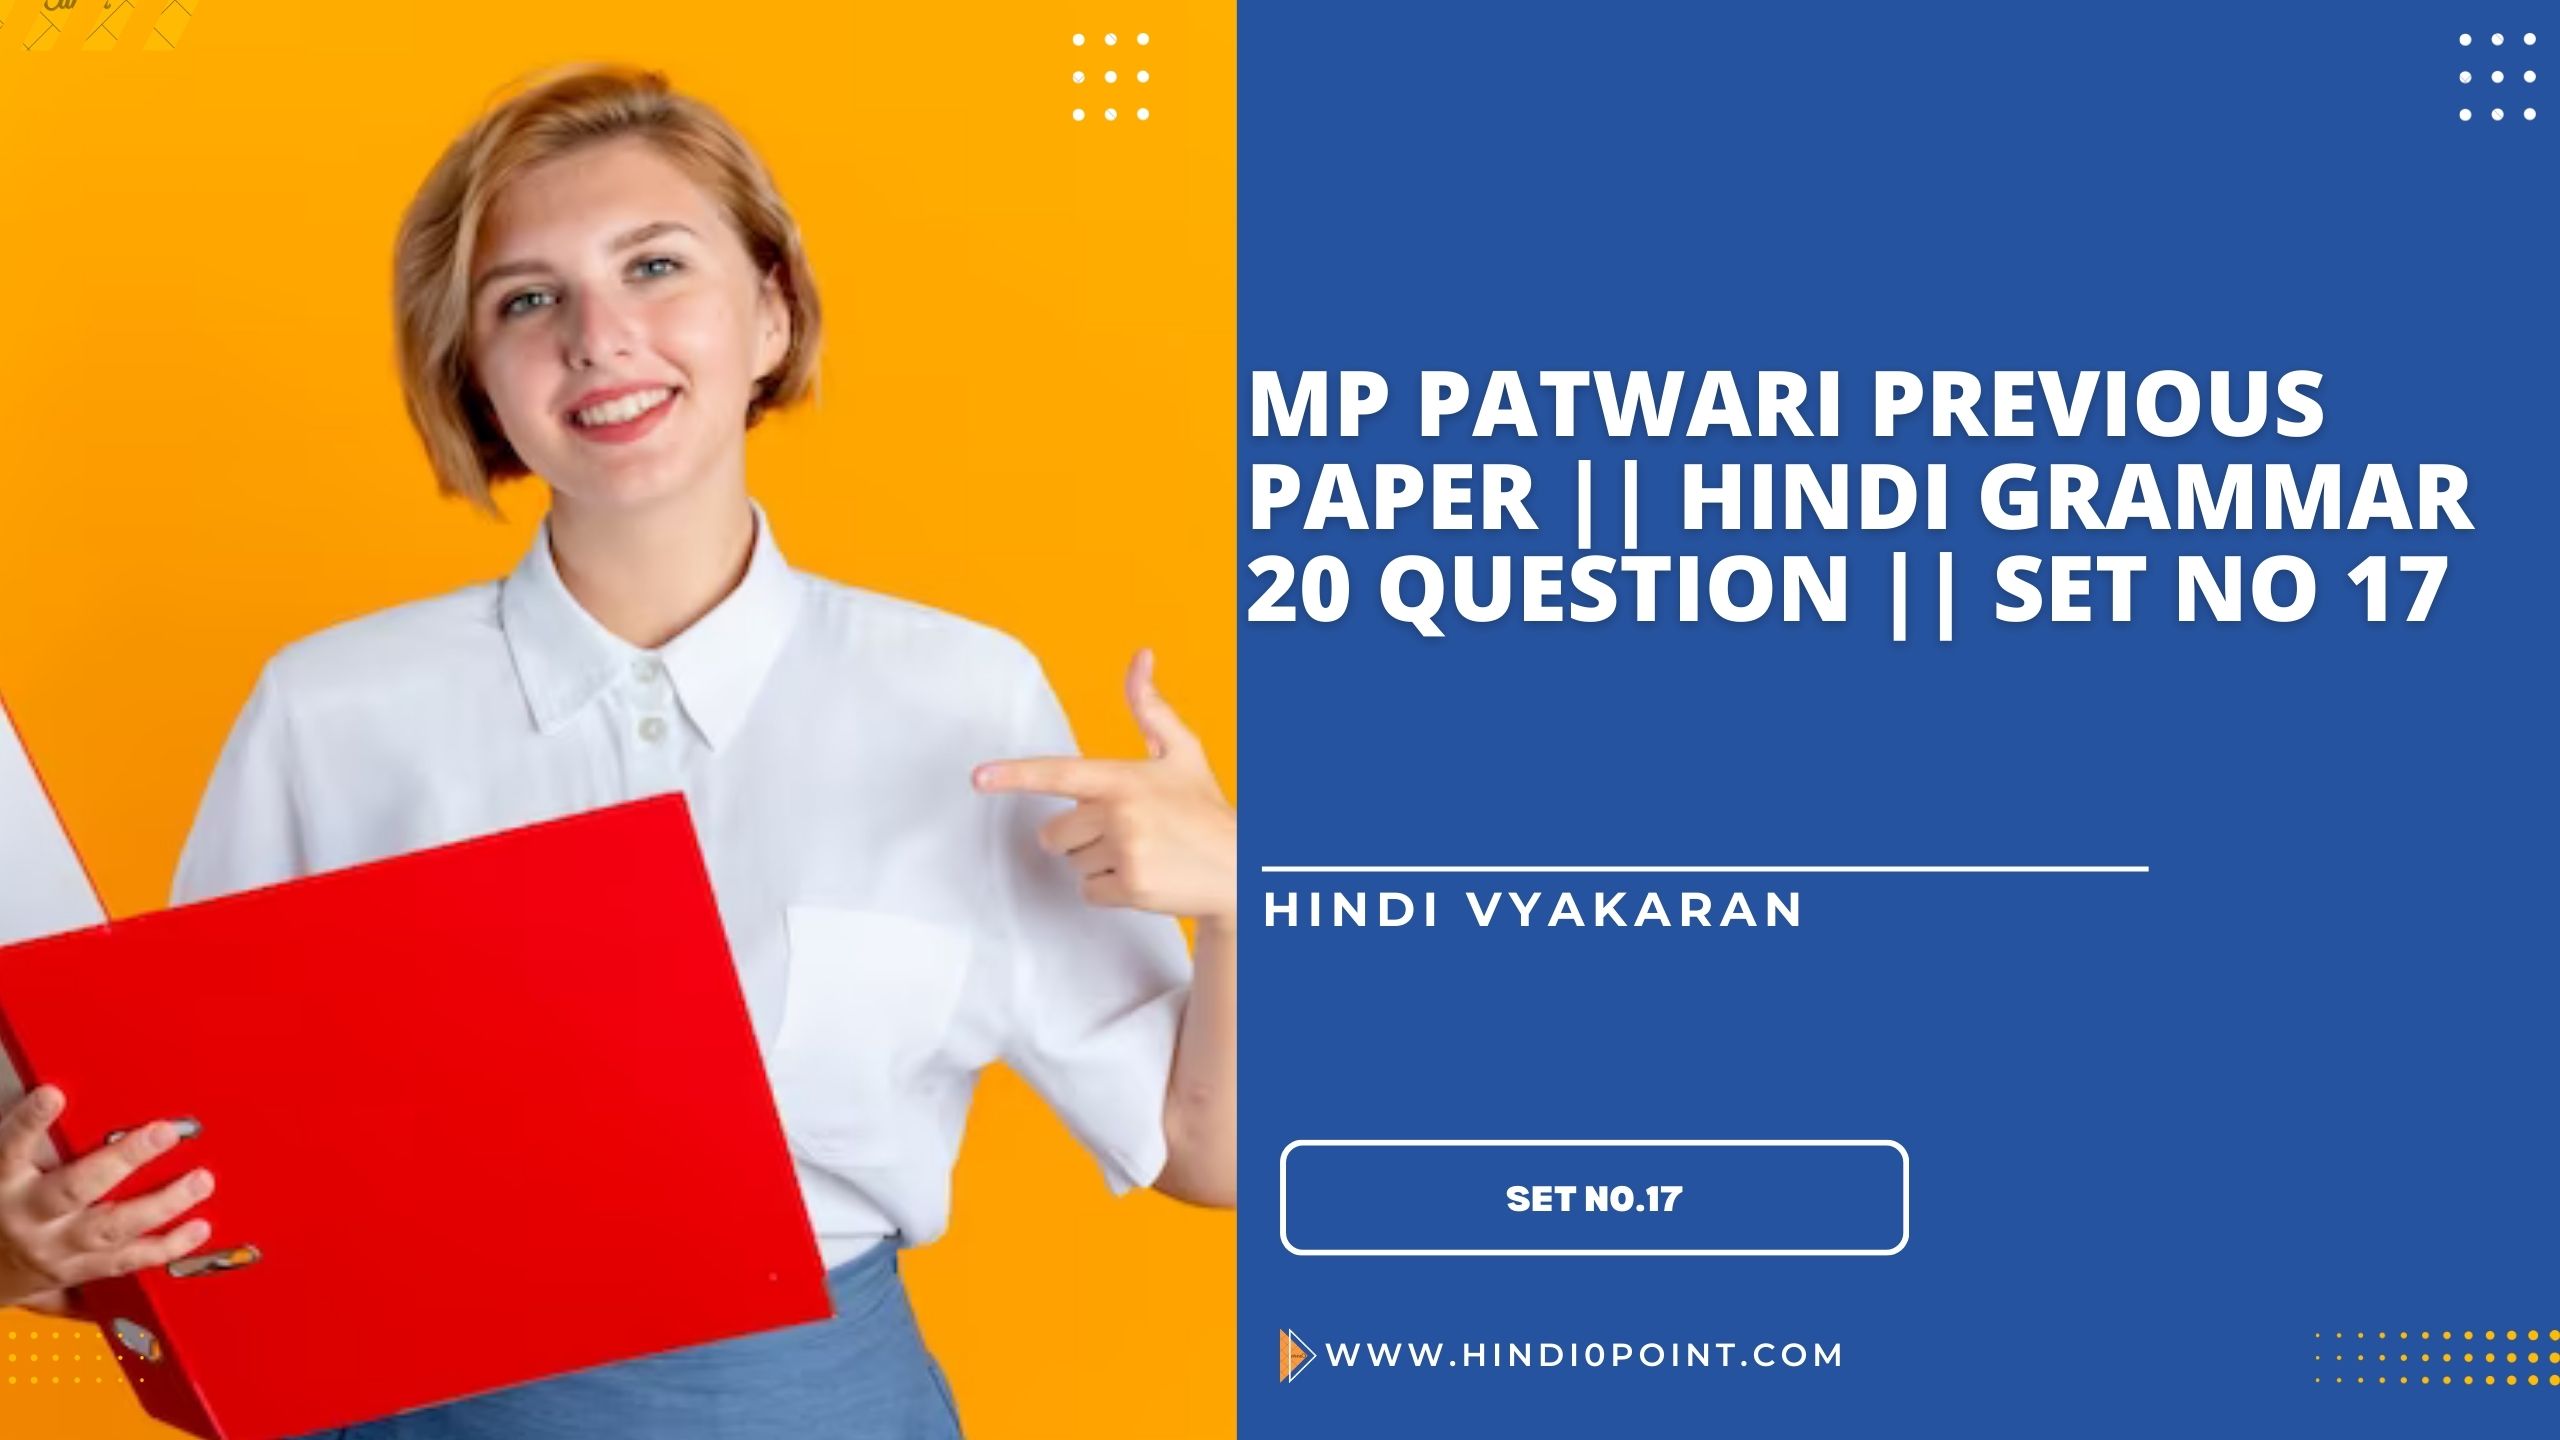 Mp patwari previous paper || Hindi grammar 20 question || set no 17